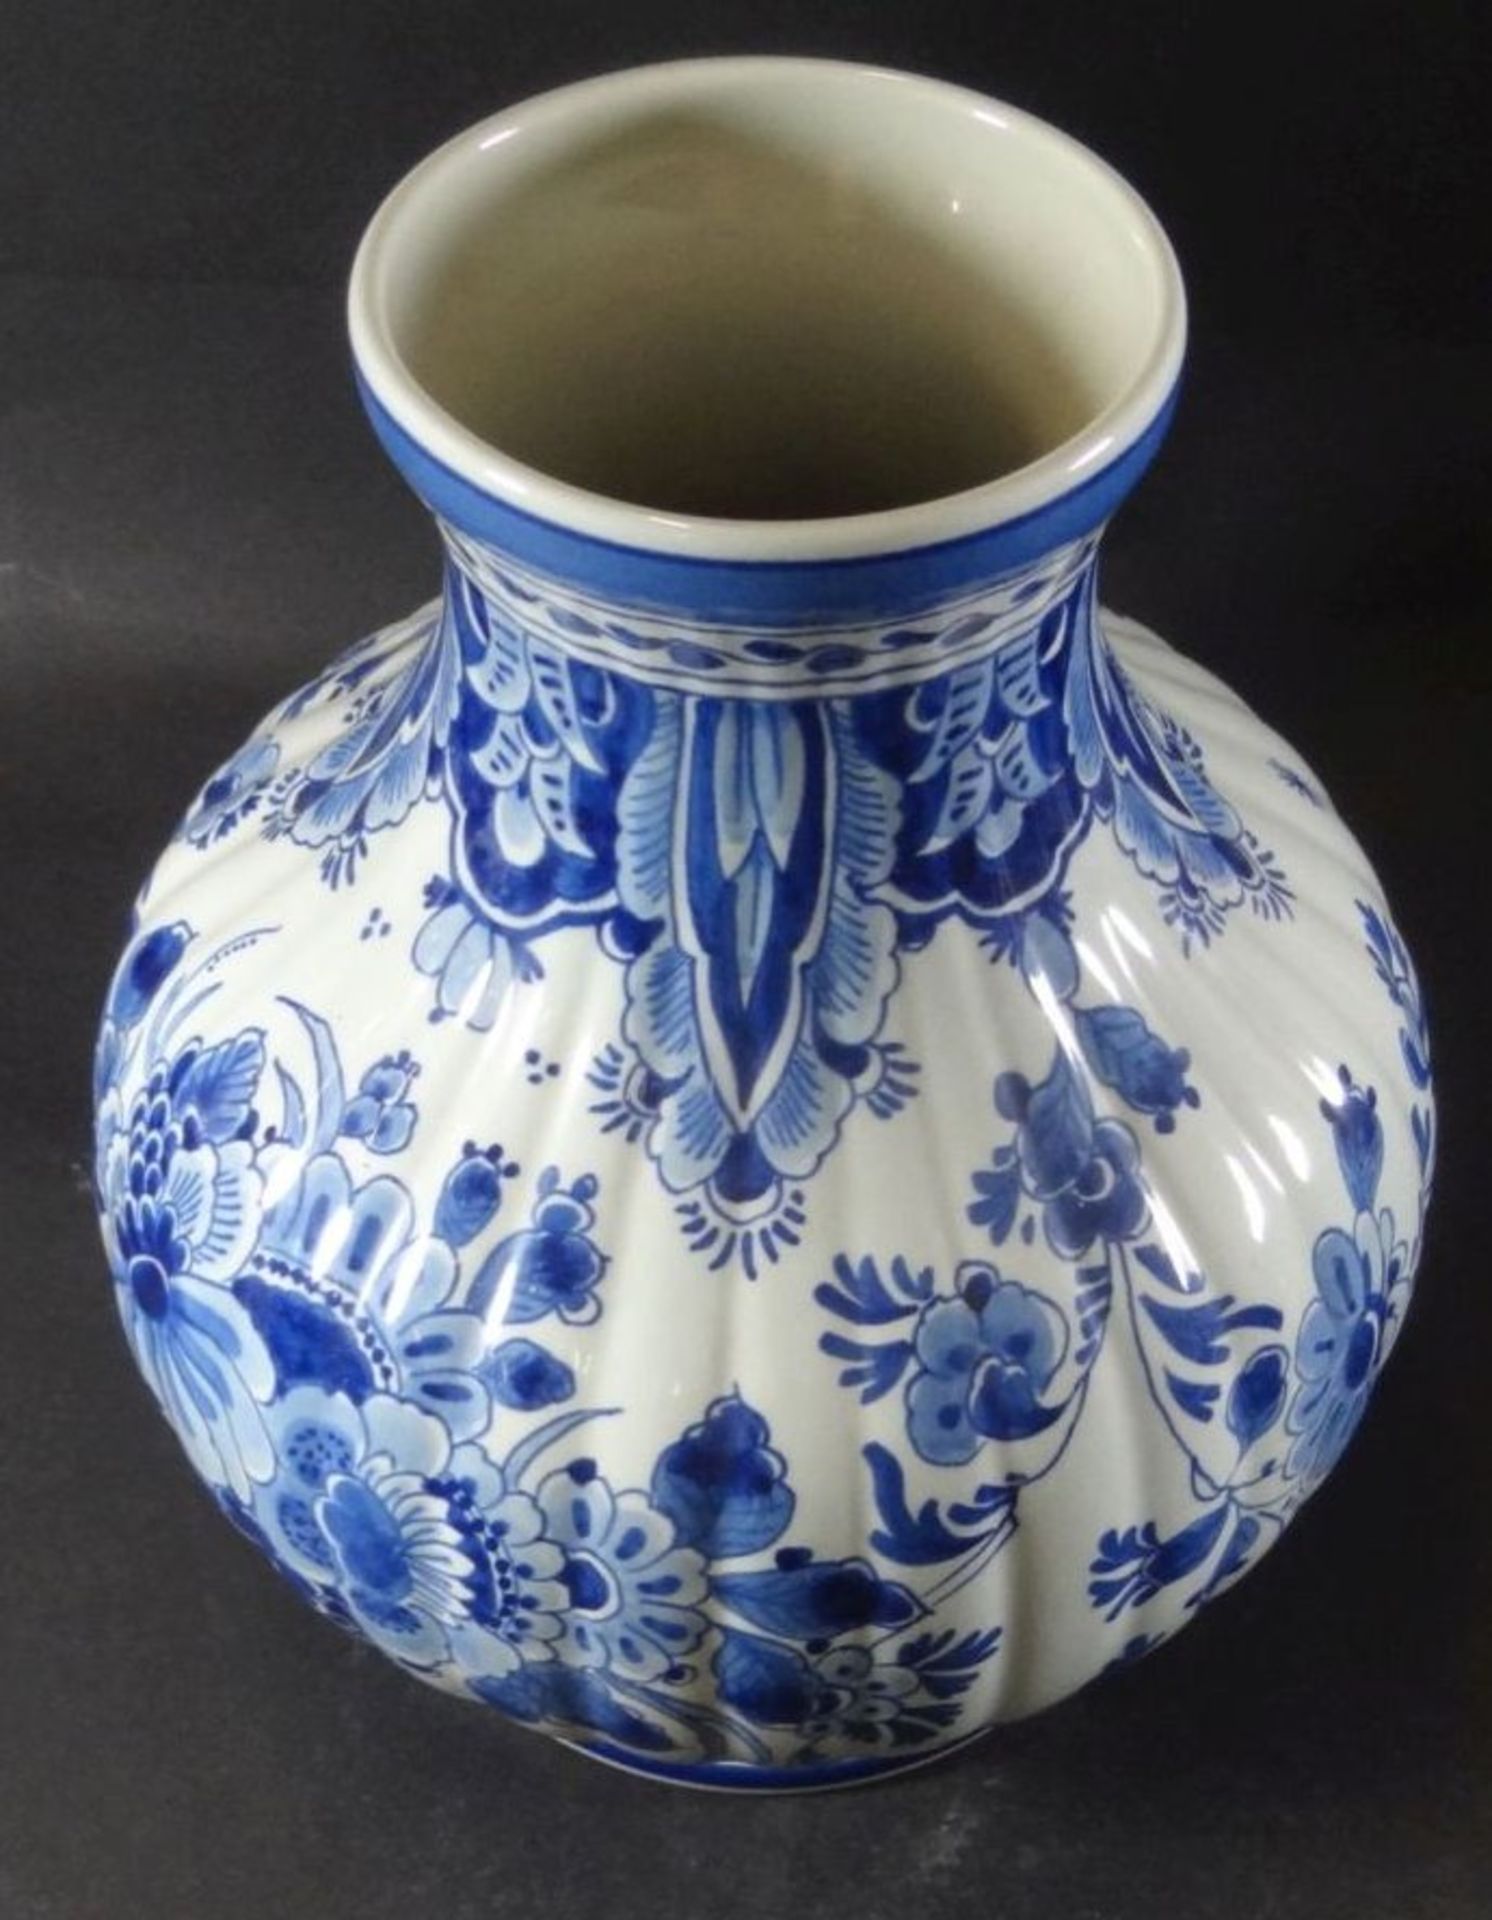 gr. Vase "Konniglike Porcelayne fles" Delft, H-24 cm, D-18 cm - Bild 5 aus 5